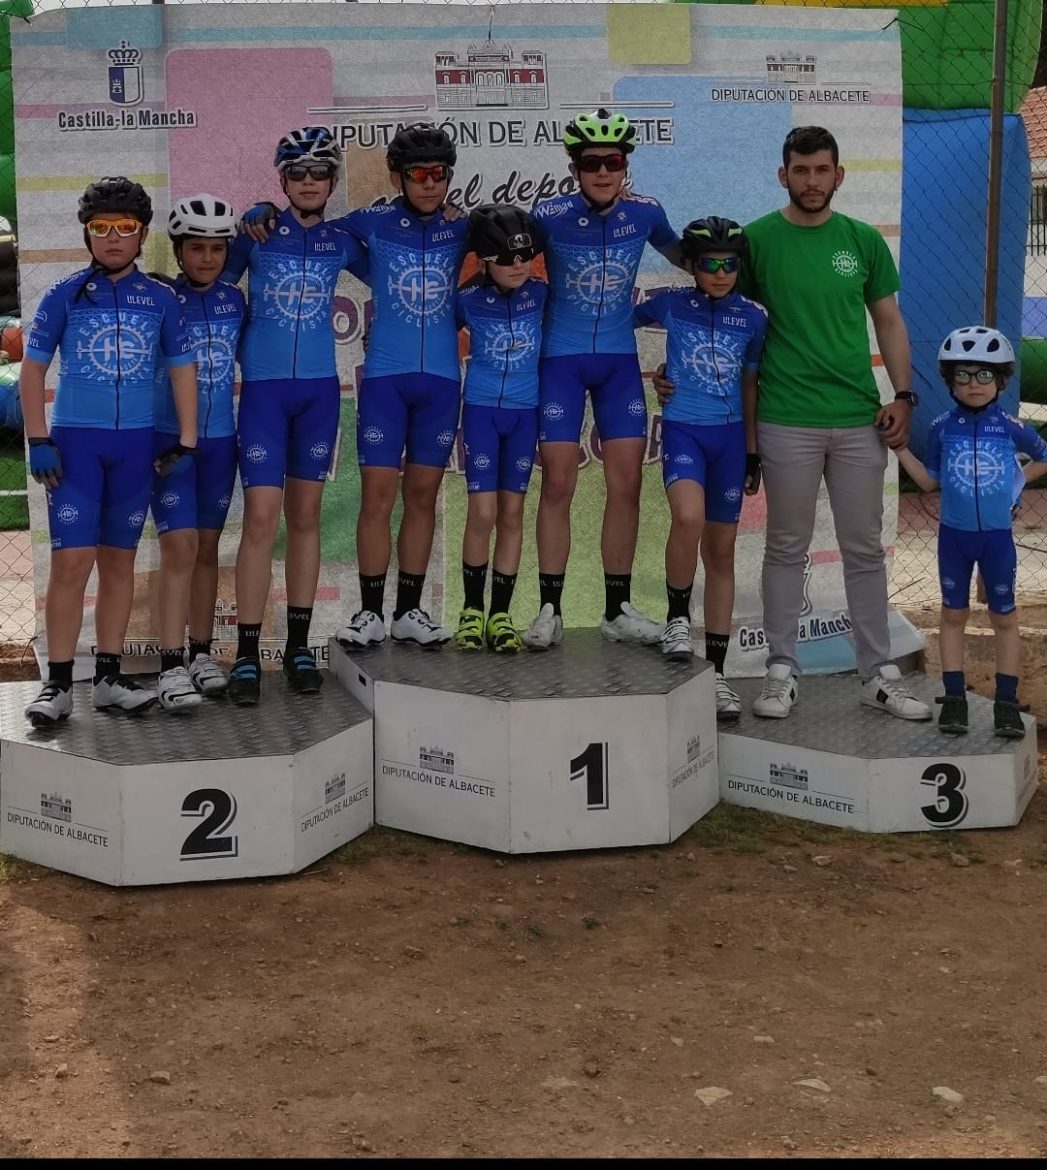 La escuela ciclista Albacete/Héctor Carretero debutó el sábado en Ossa de Montiel